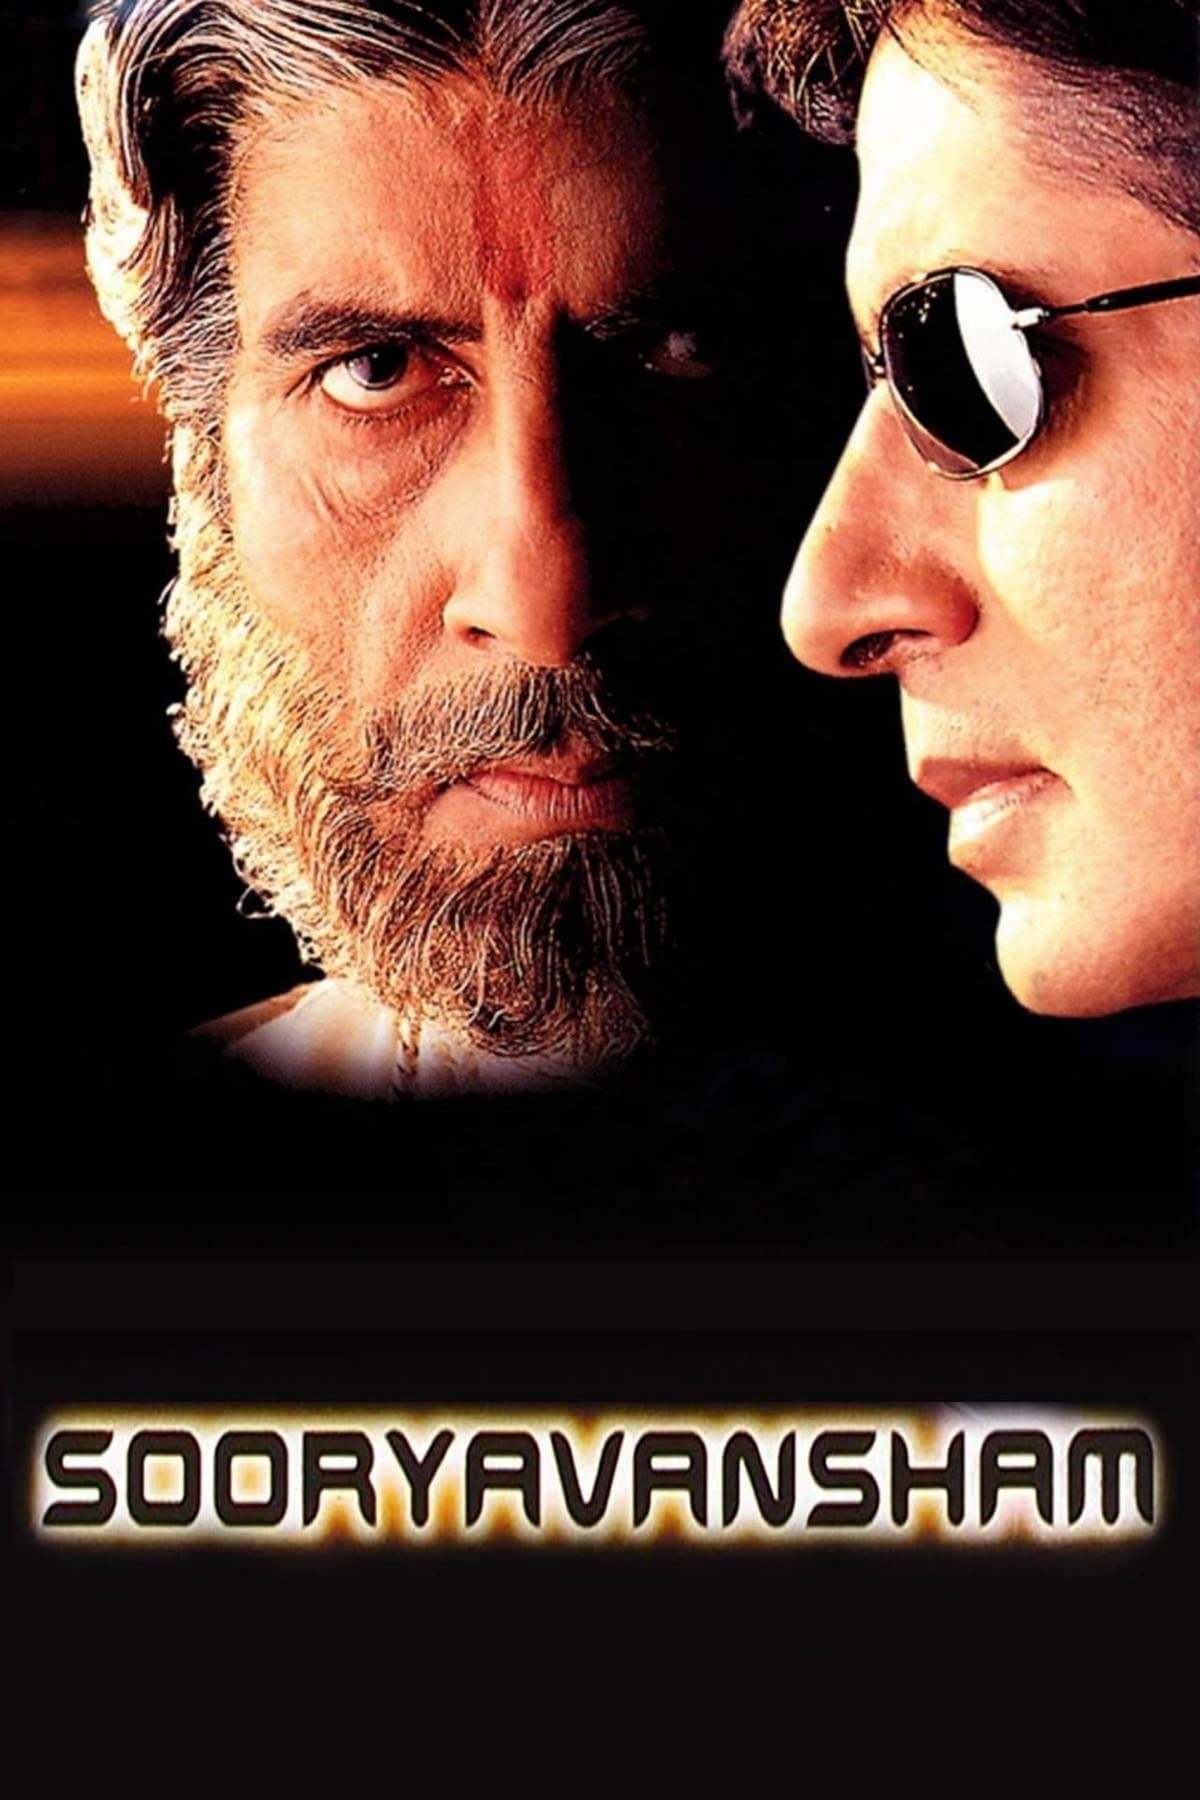 Sooryavansham streaming